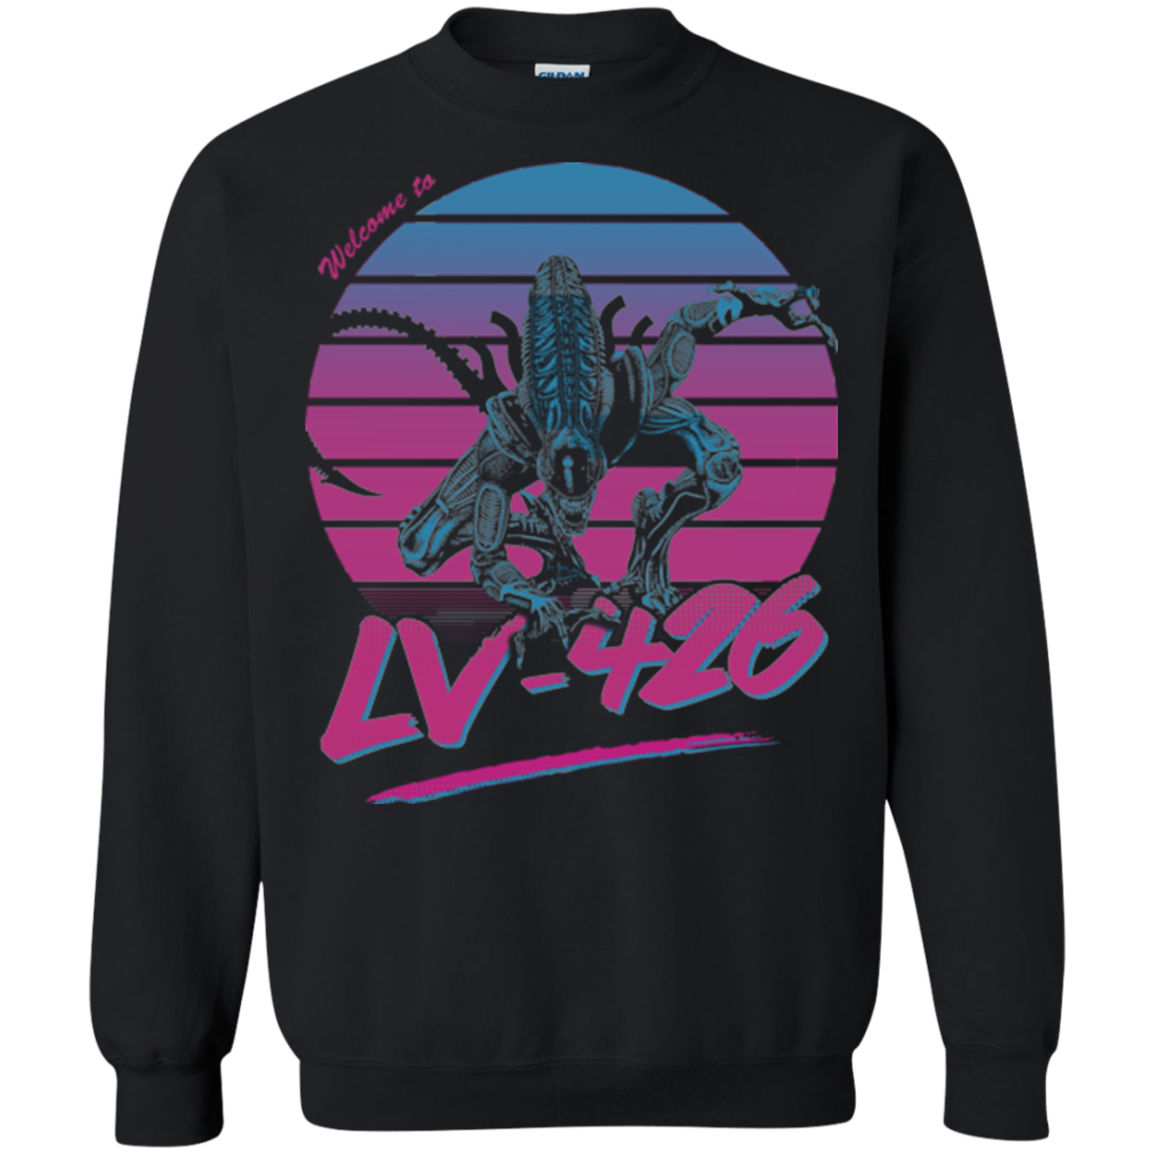 Welcome to LV-426 Crewneck Sweatshirt – Pop Up Tee